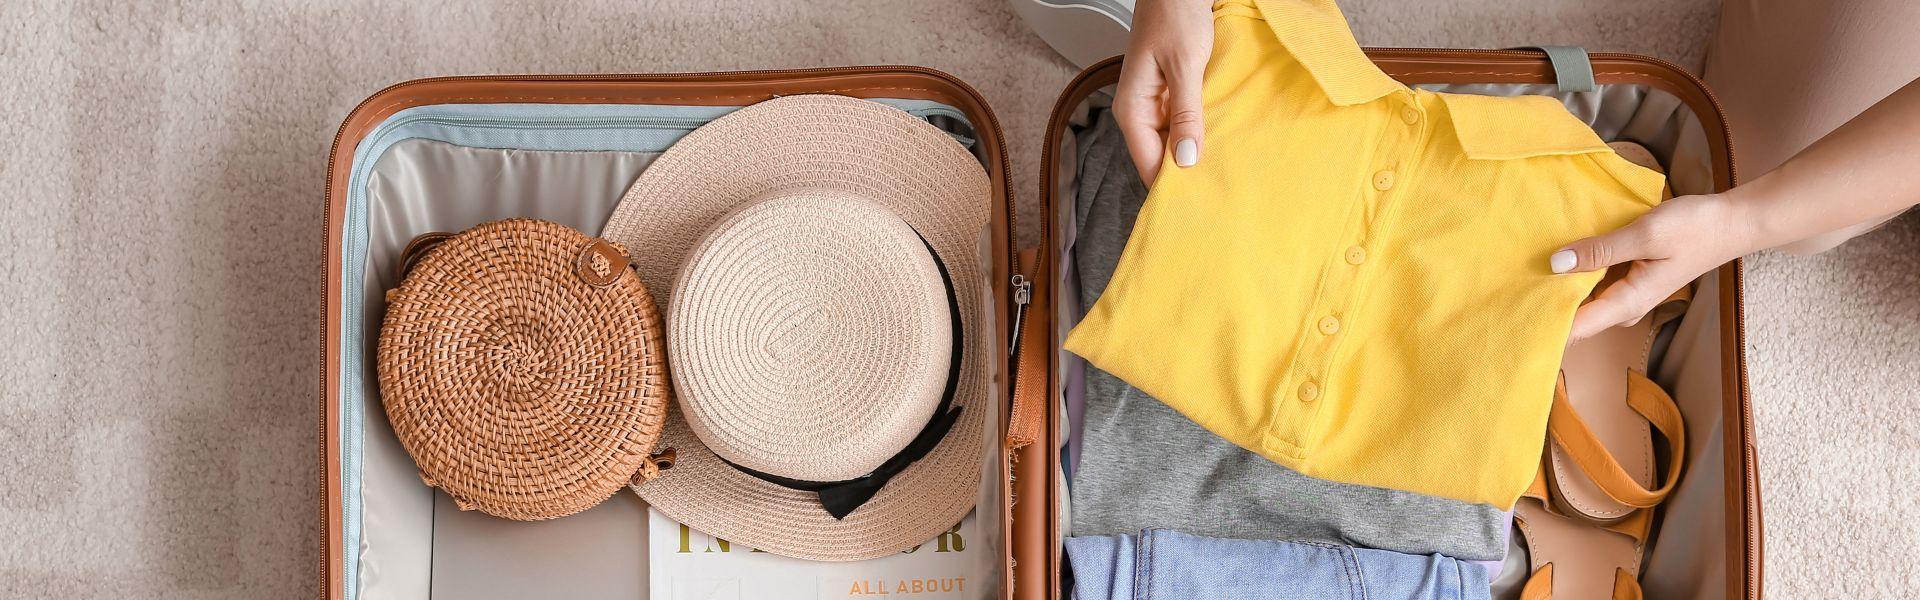 Comment préparer sa valise pour un voyage au Vietnam?